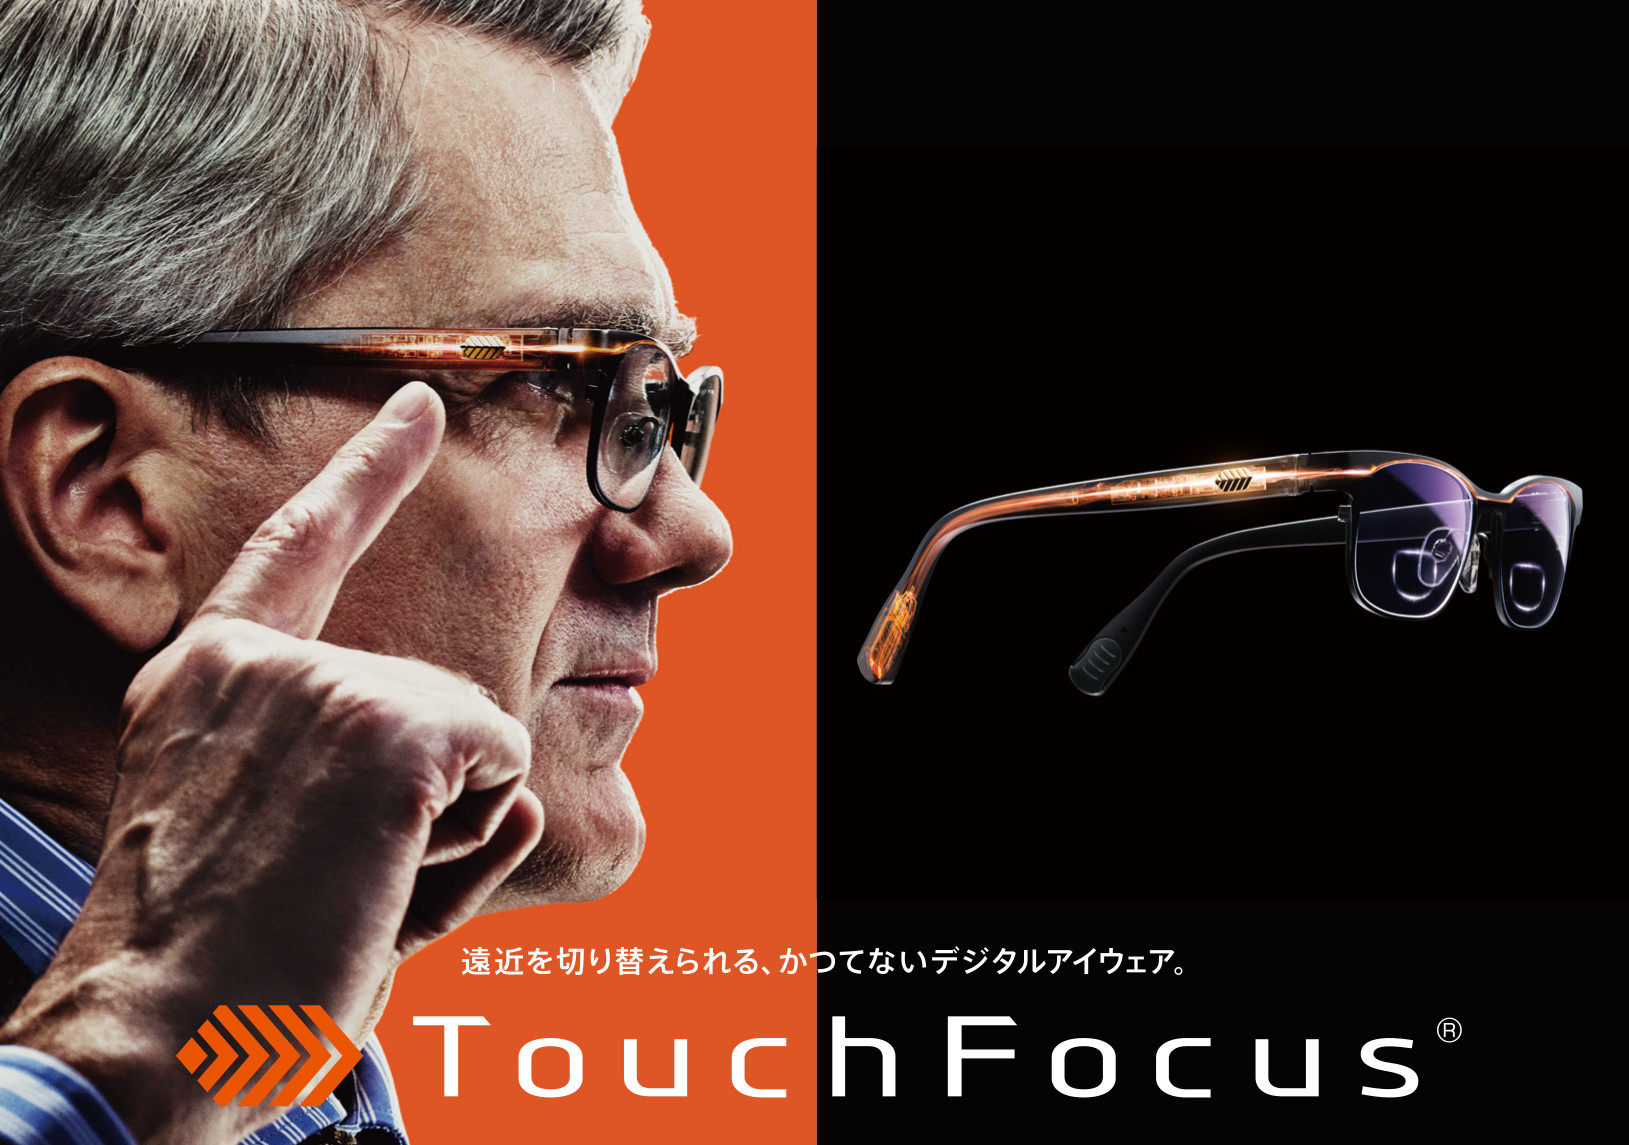 TouchFocus®